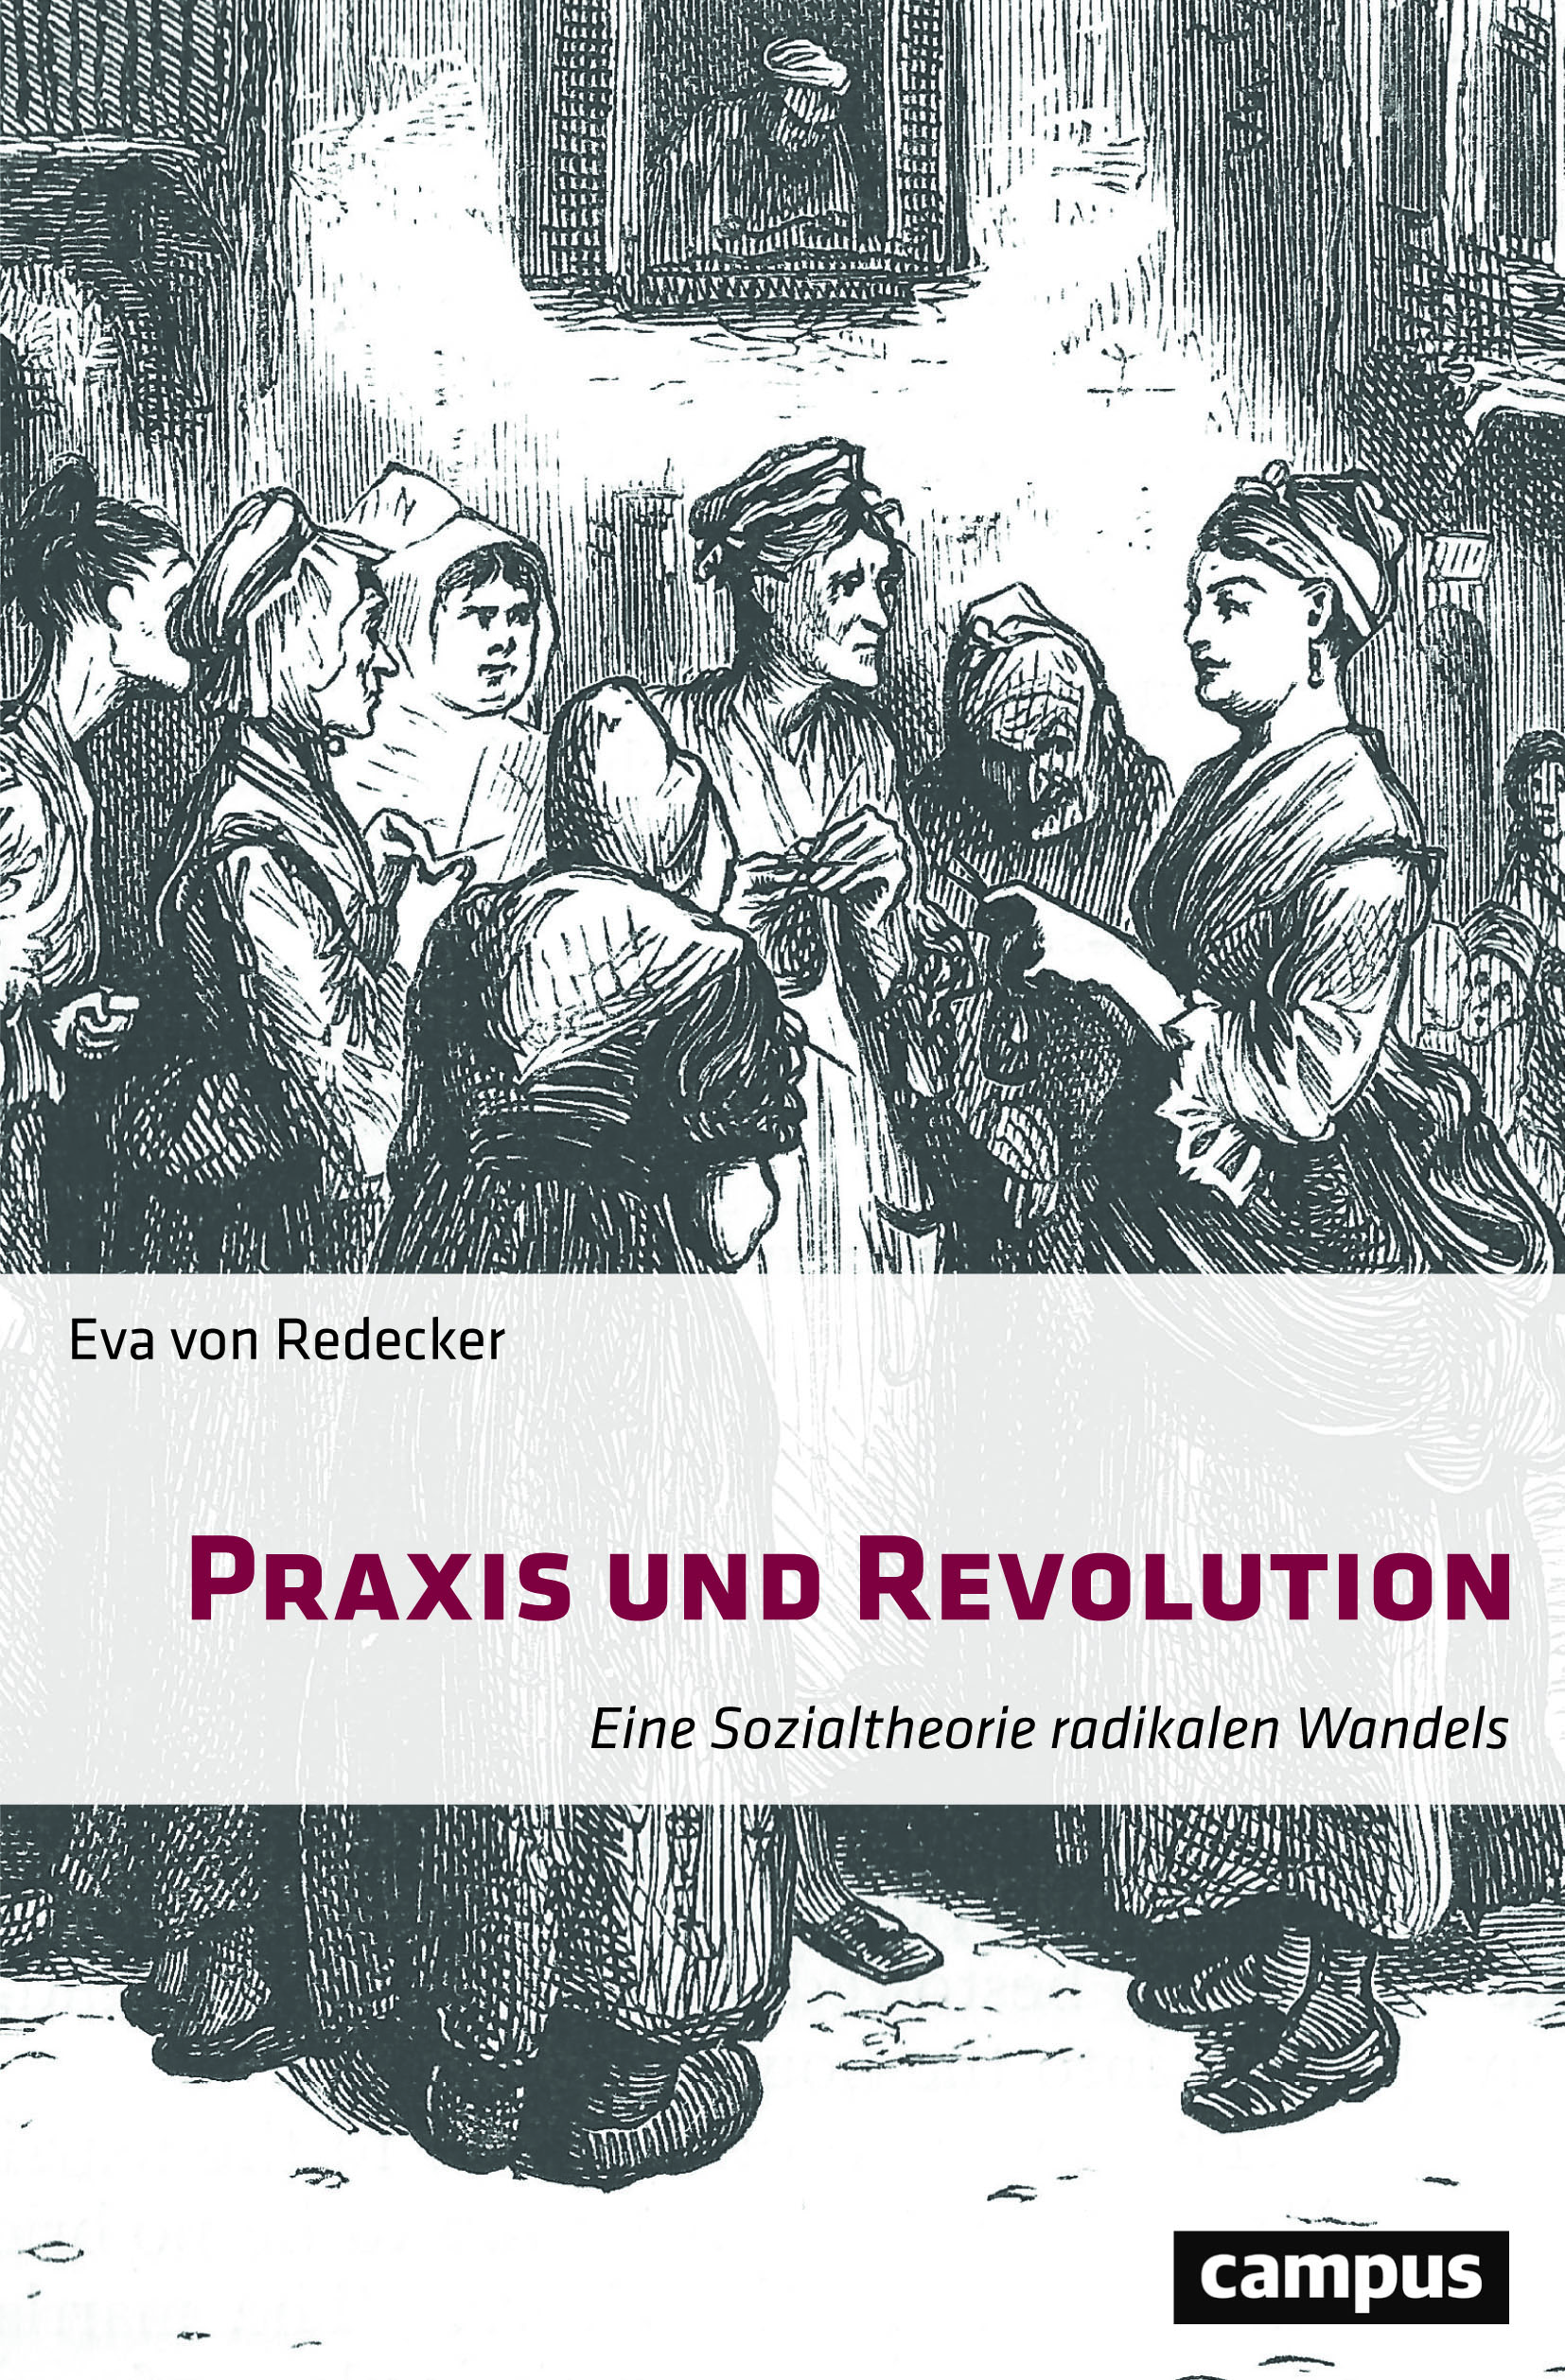 redecker_praxis_revolution